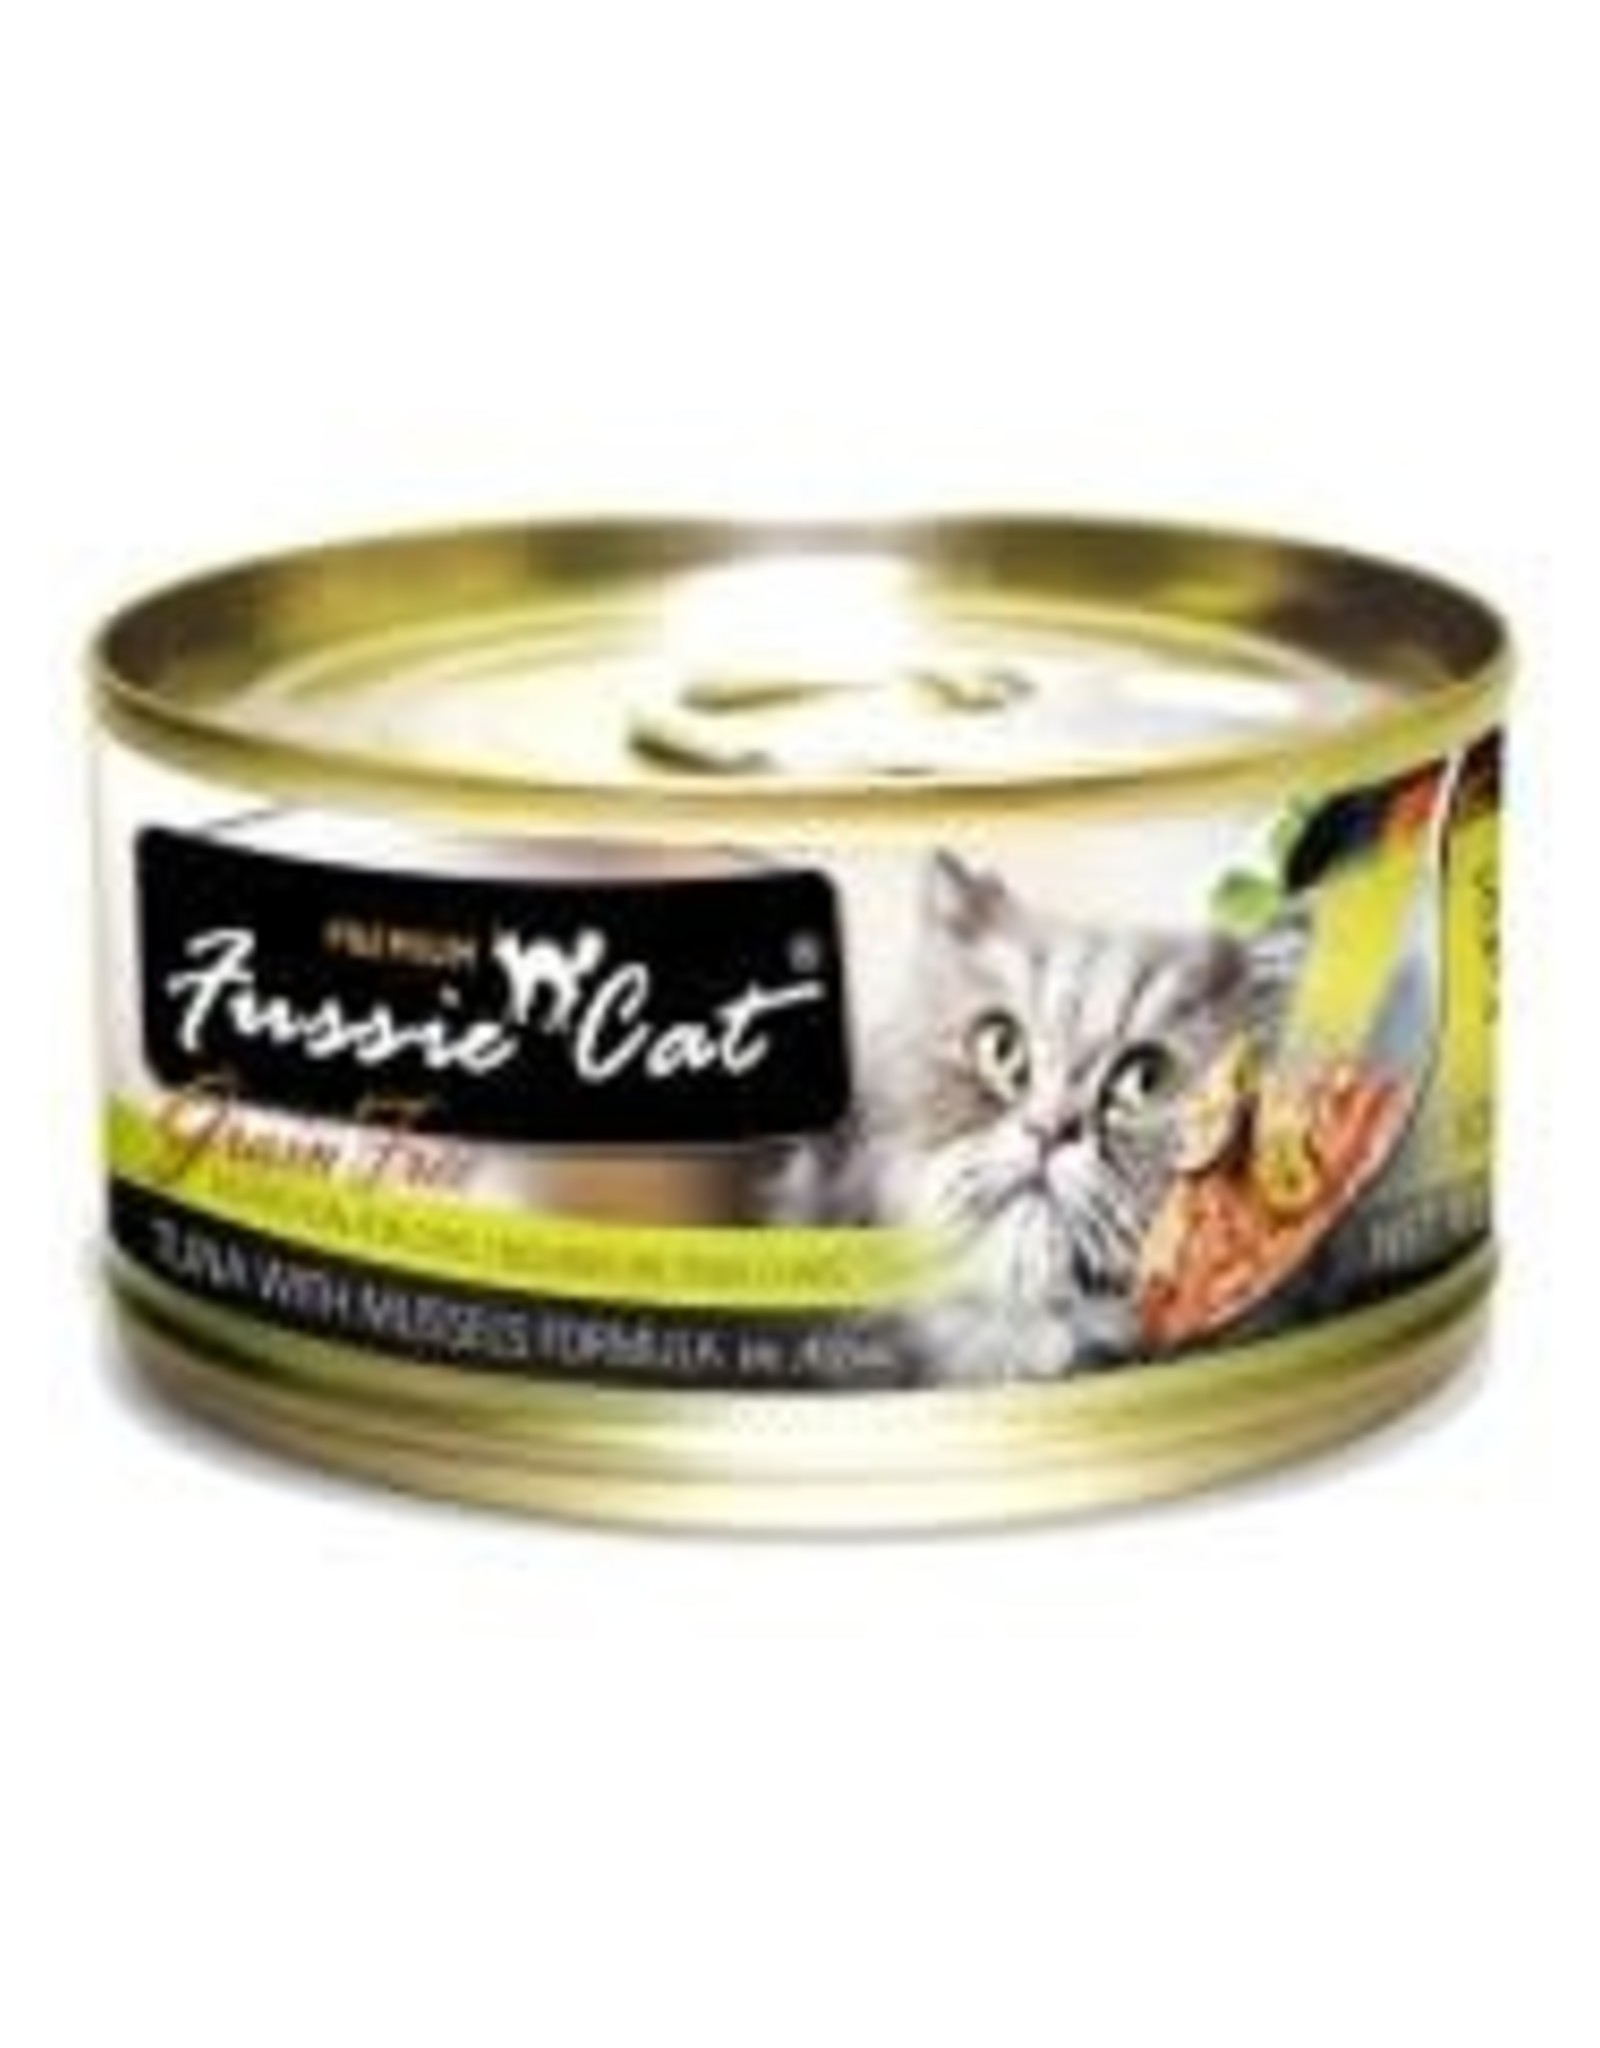 PETS GLOBAL FUSSIE CAT Premium Grain Free Tuna & Mussels